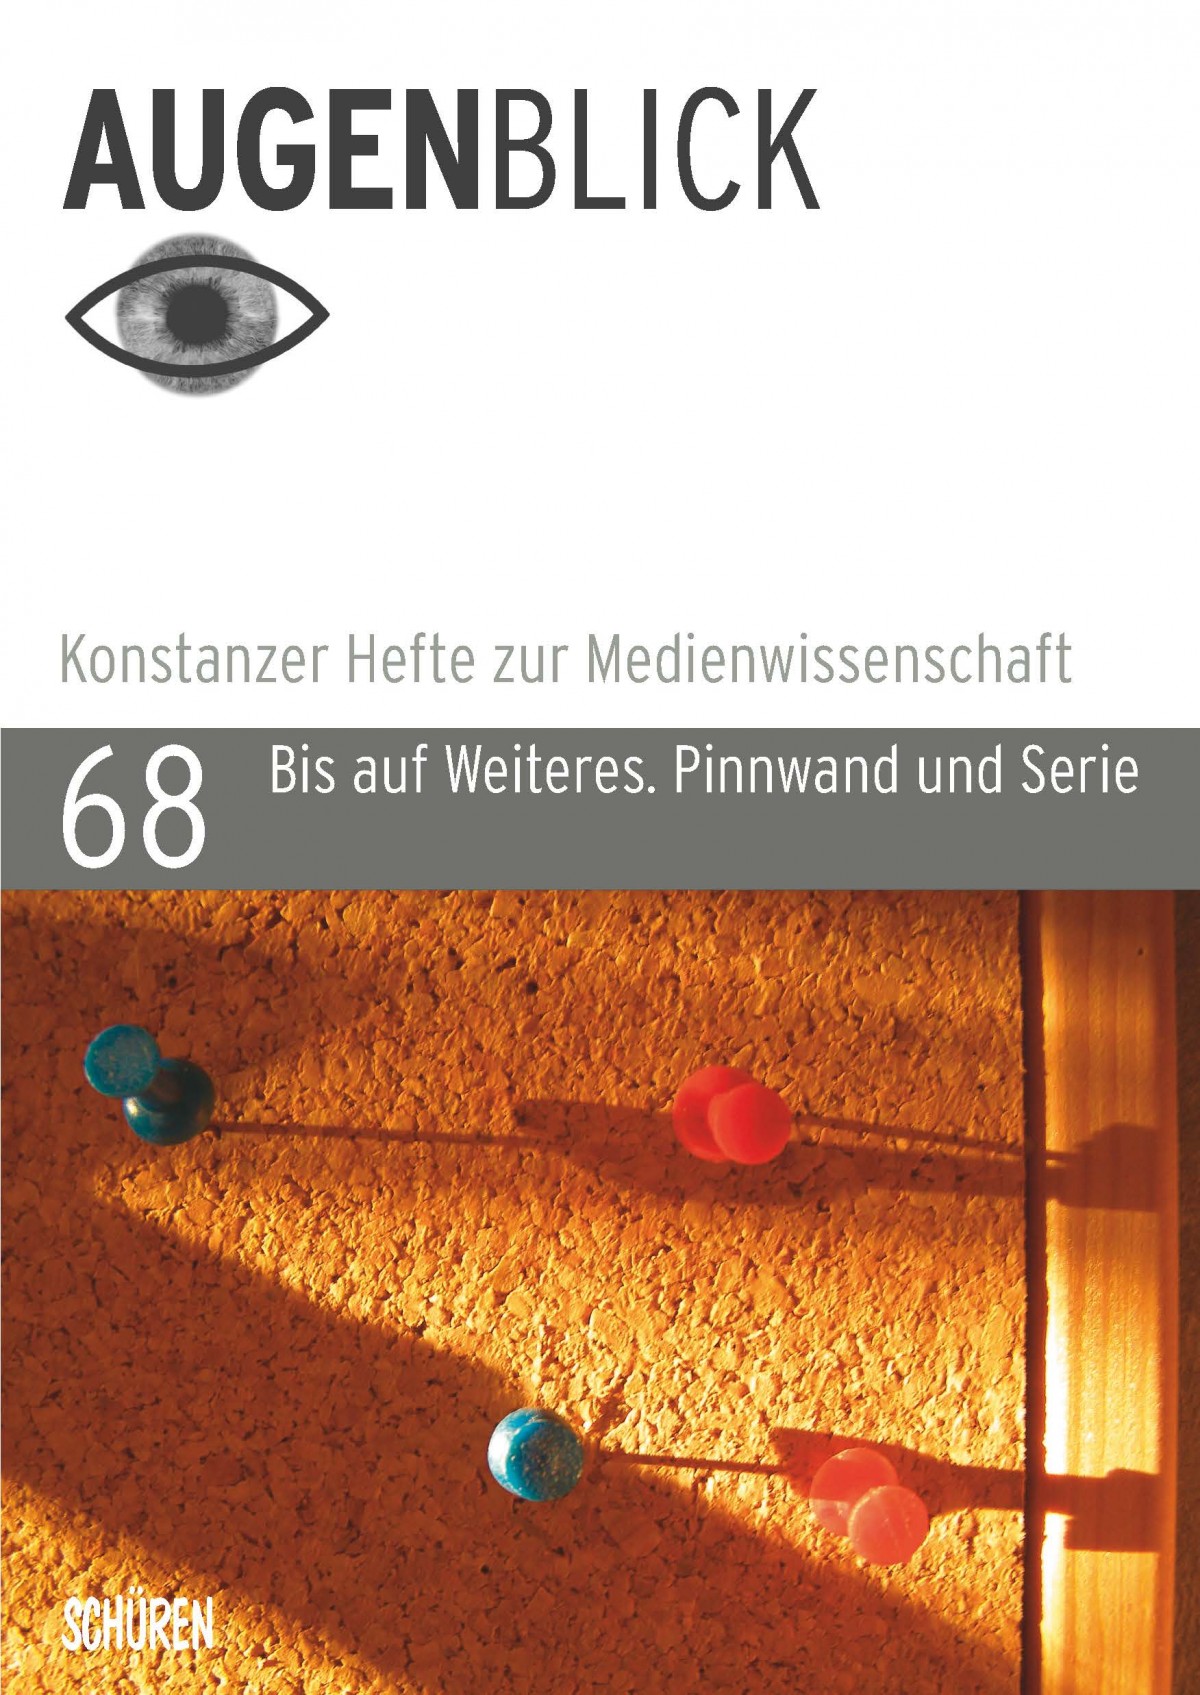 Cover der Zeitschrift Augenblick, Ausgabe 68